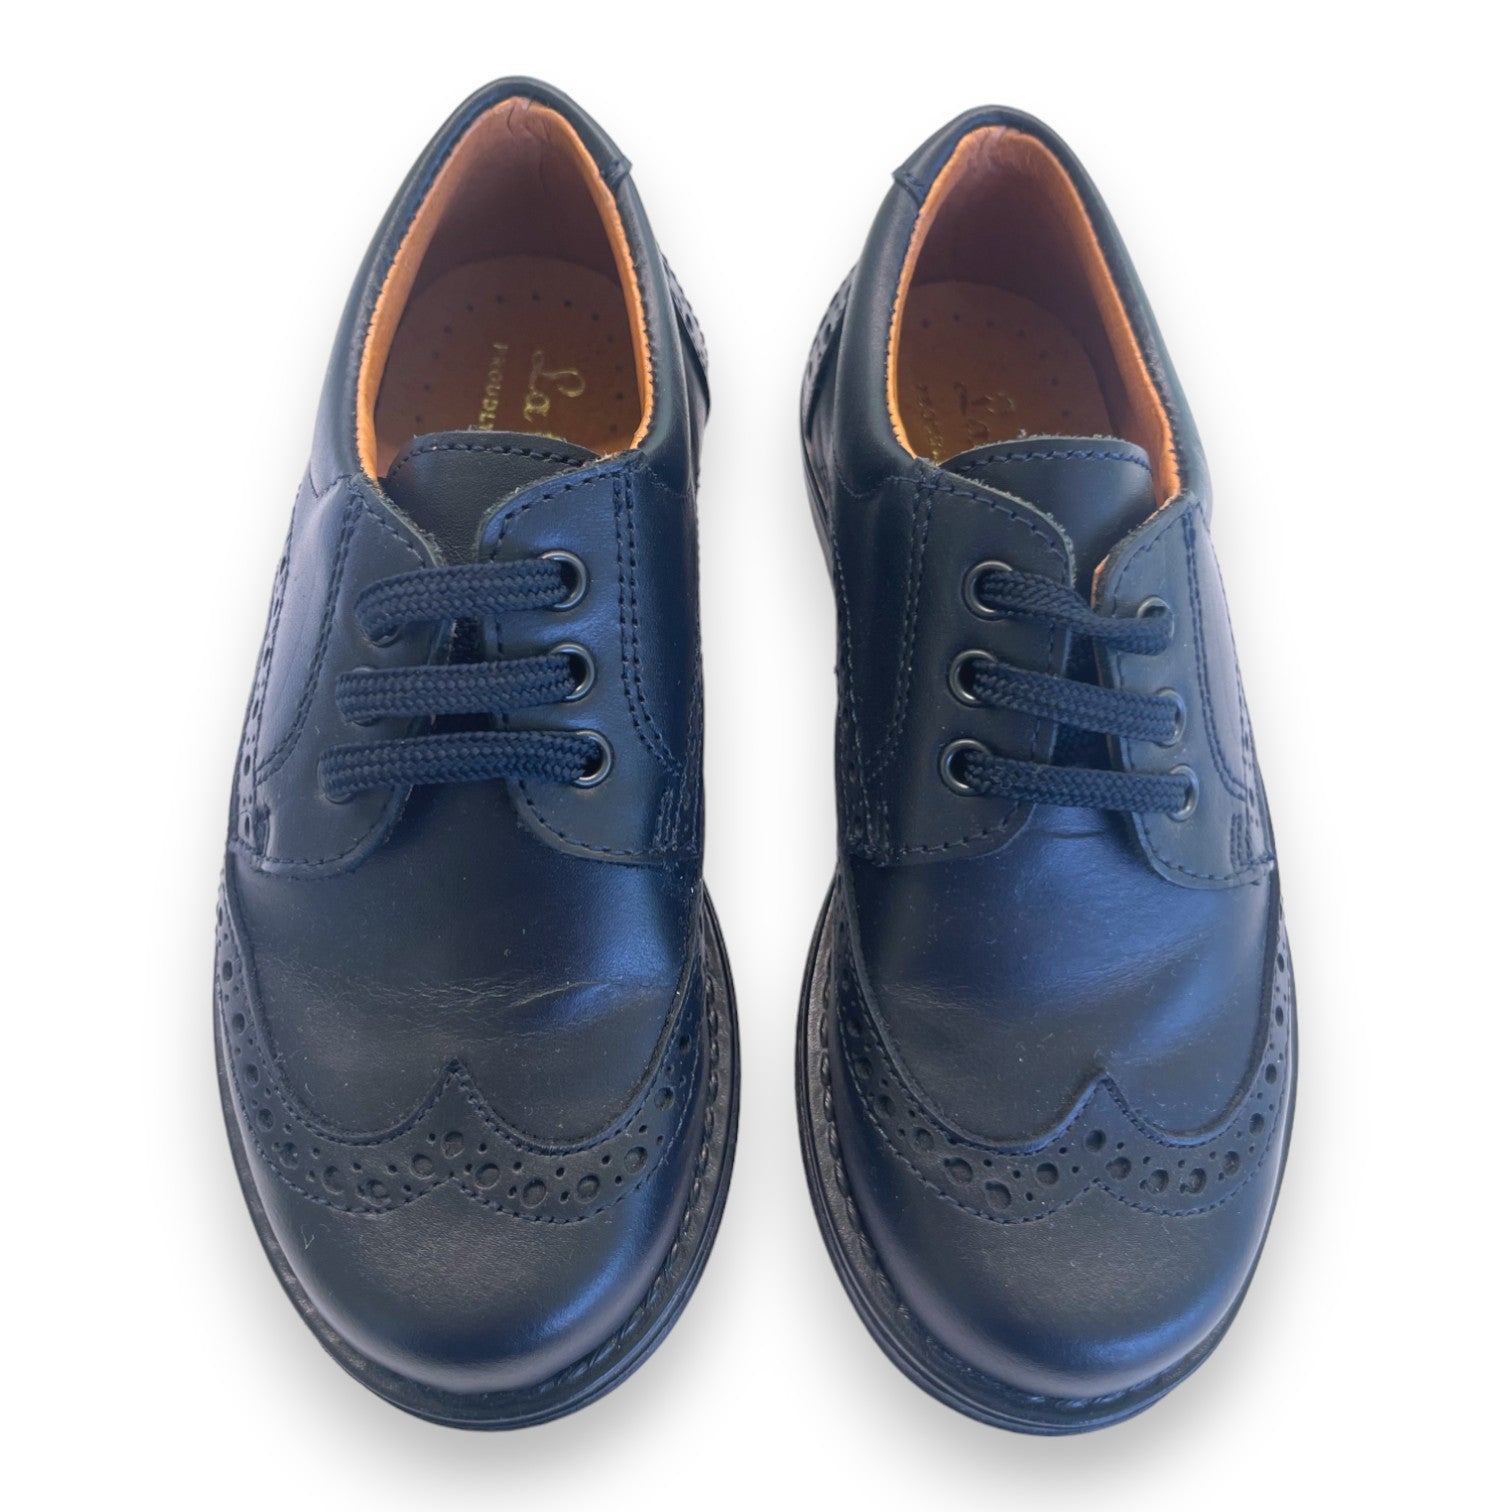 LA COQUETA - Chaussures en cuir bleu marines - 26